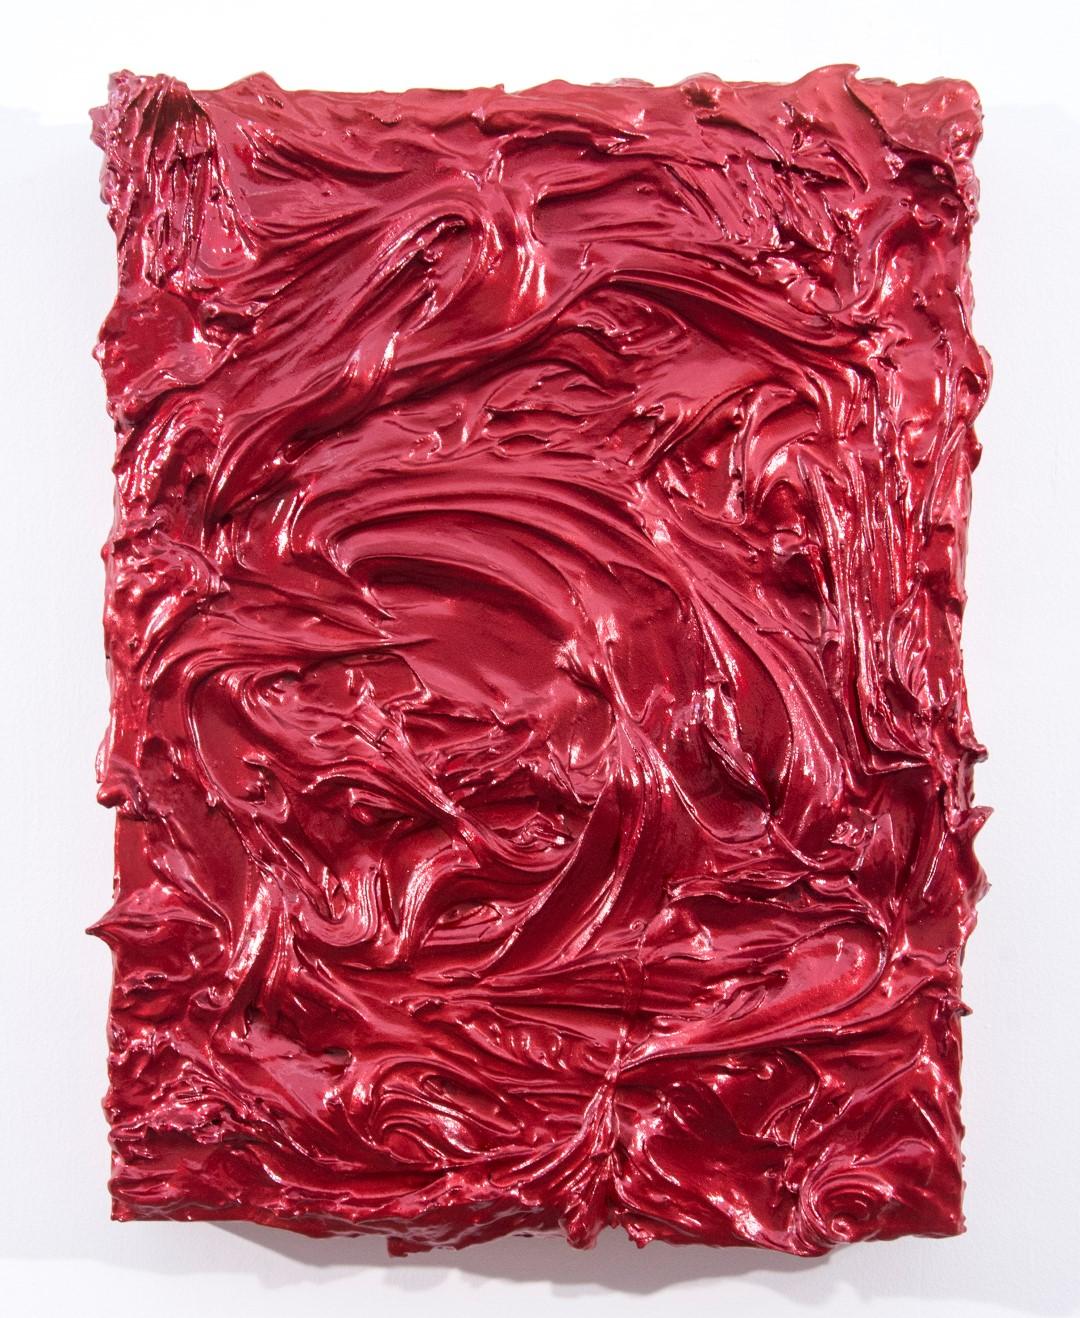 Red Storm Surge - brillant, empâtement, abstrait, acrylique sur panneau - Mixed Media Art de Shayne Dark